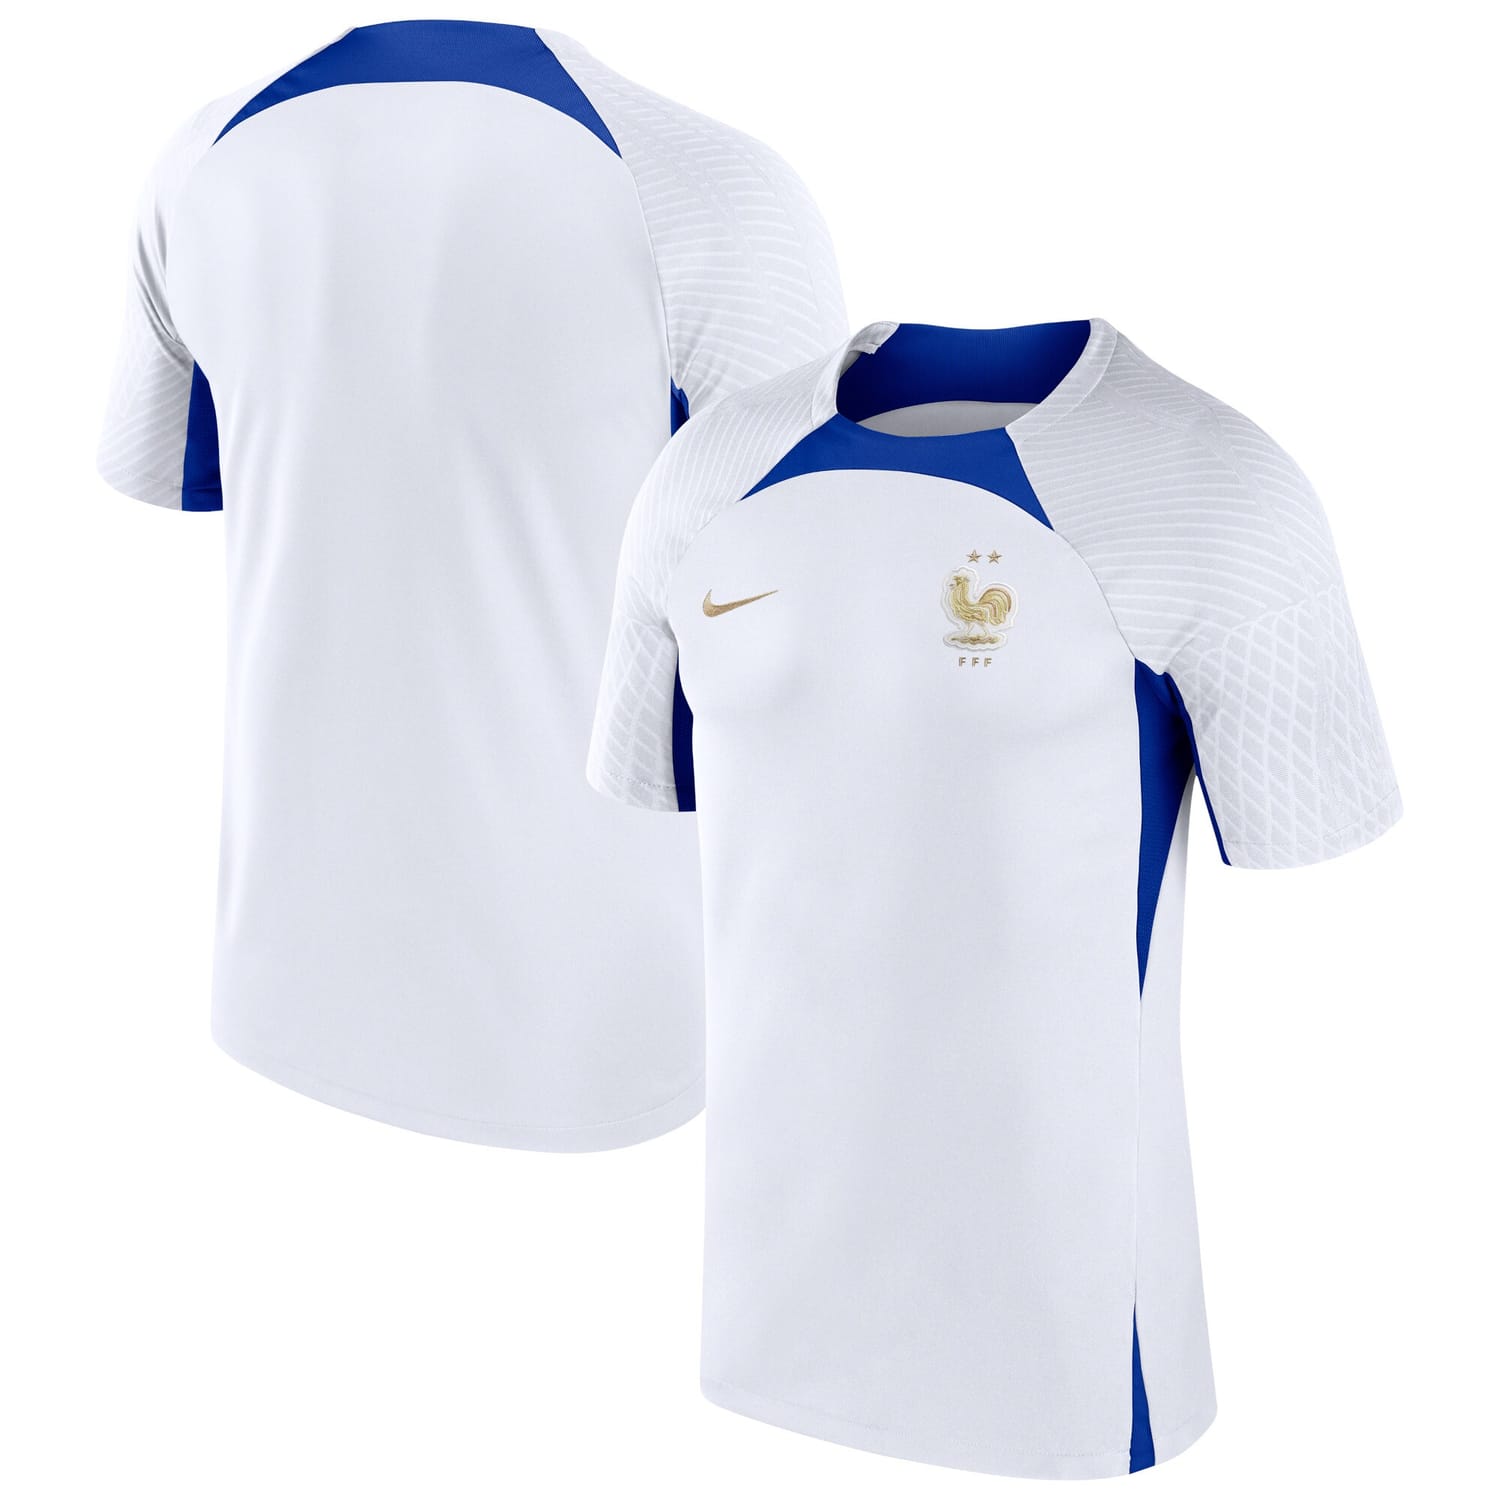 France National Team Training Jersey Shirt White for Men